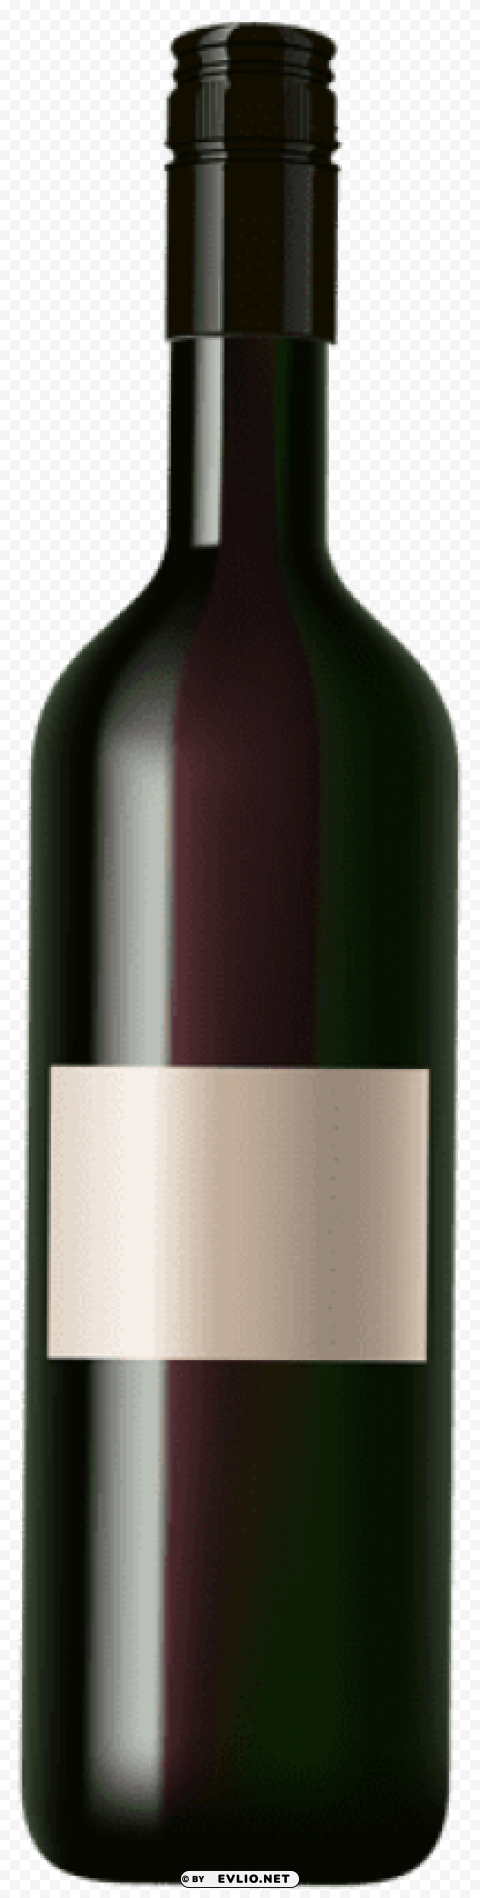 wine bottle Transparent PNG images for digital art